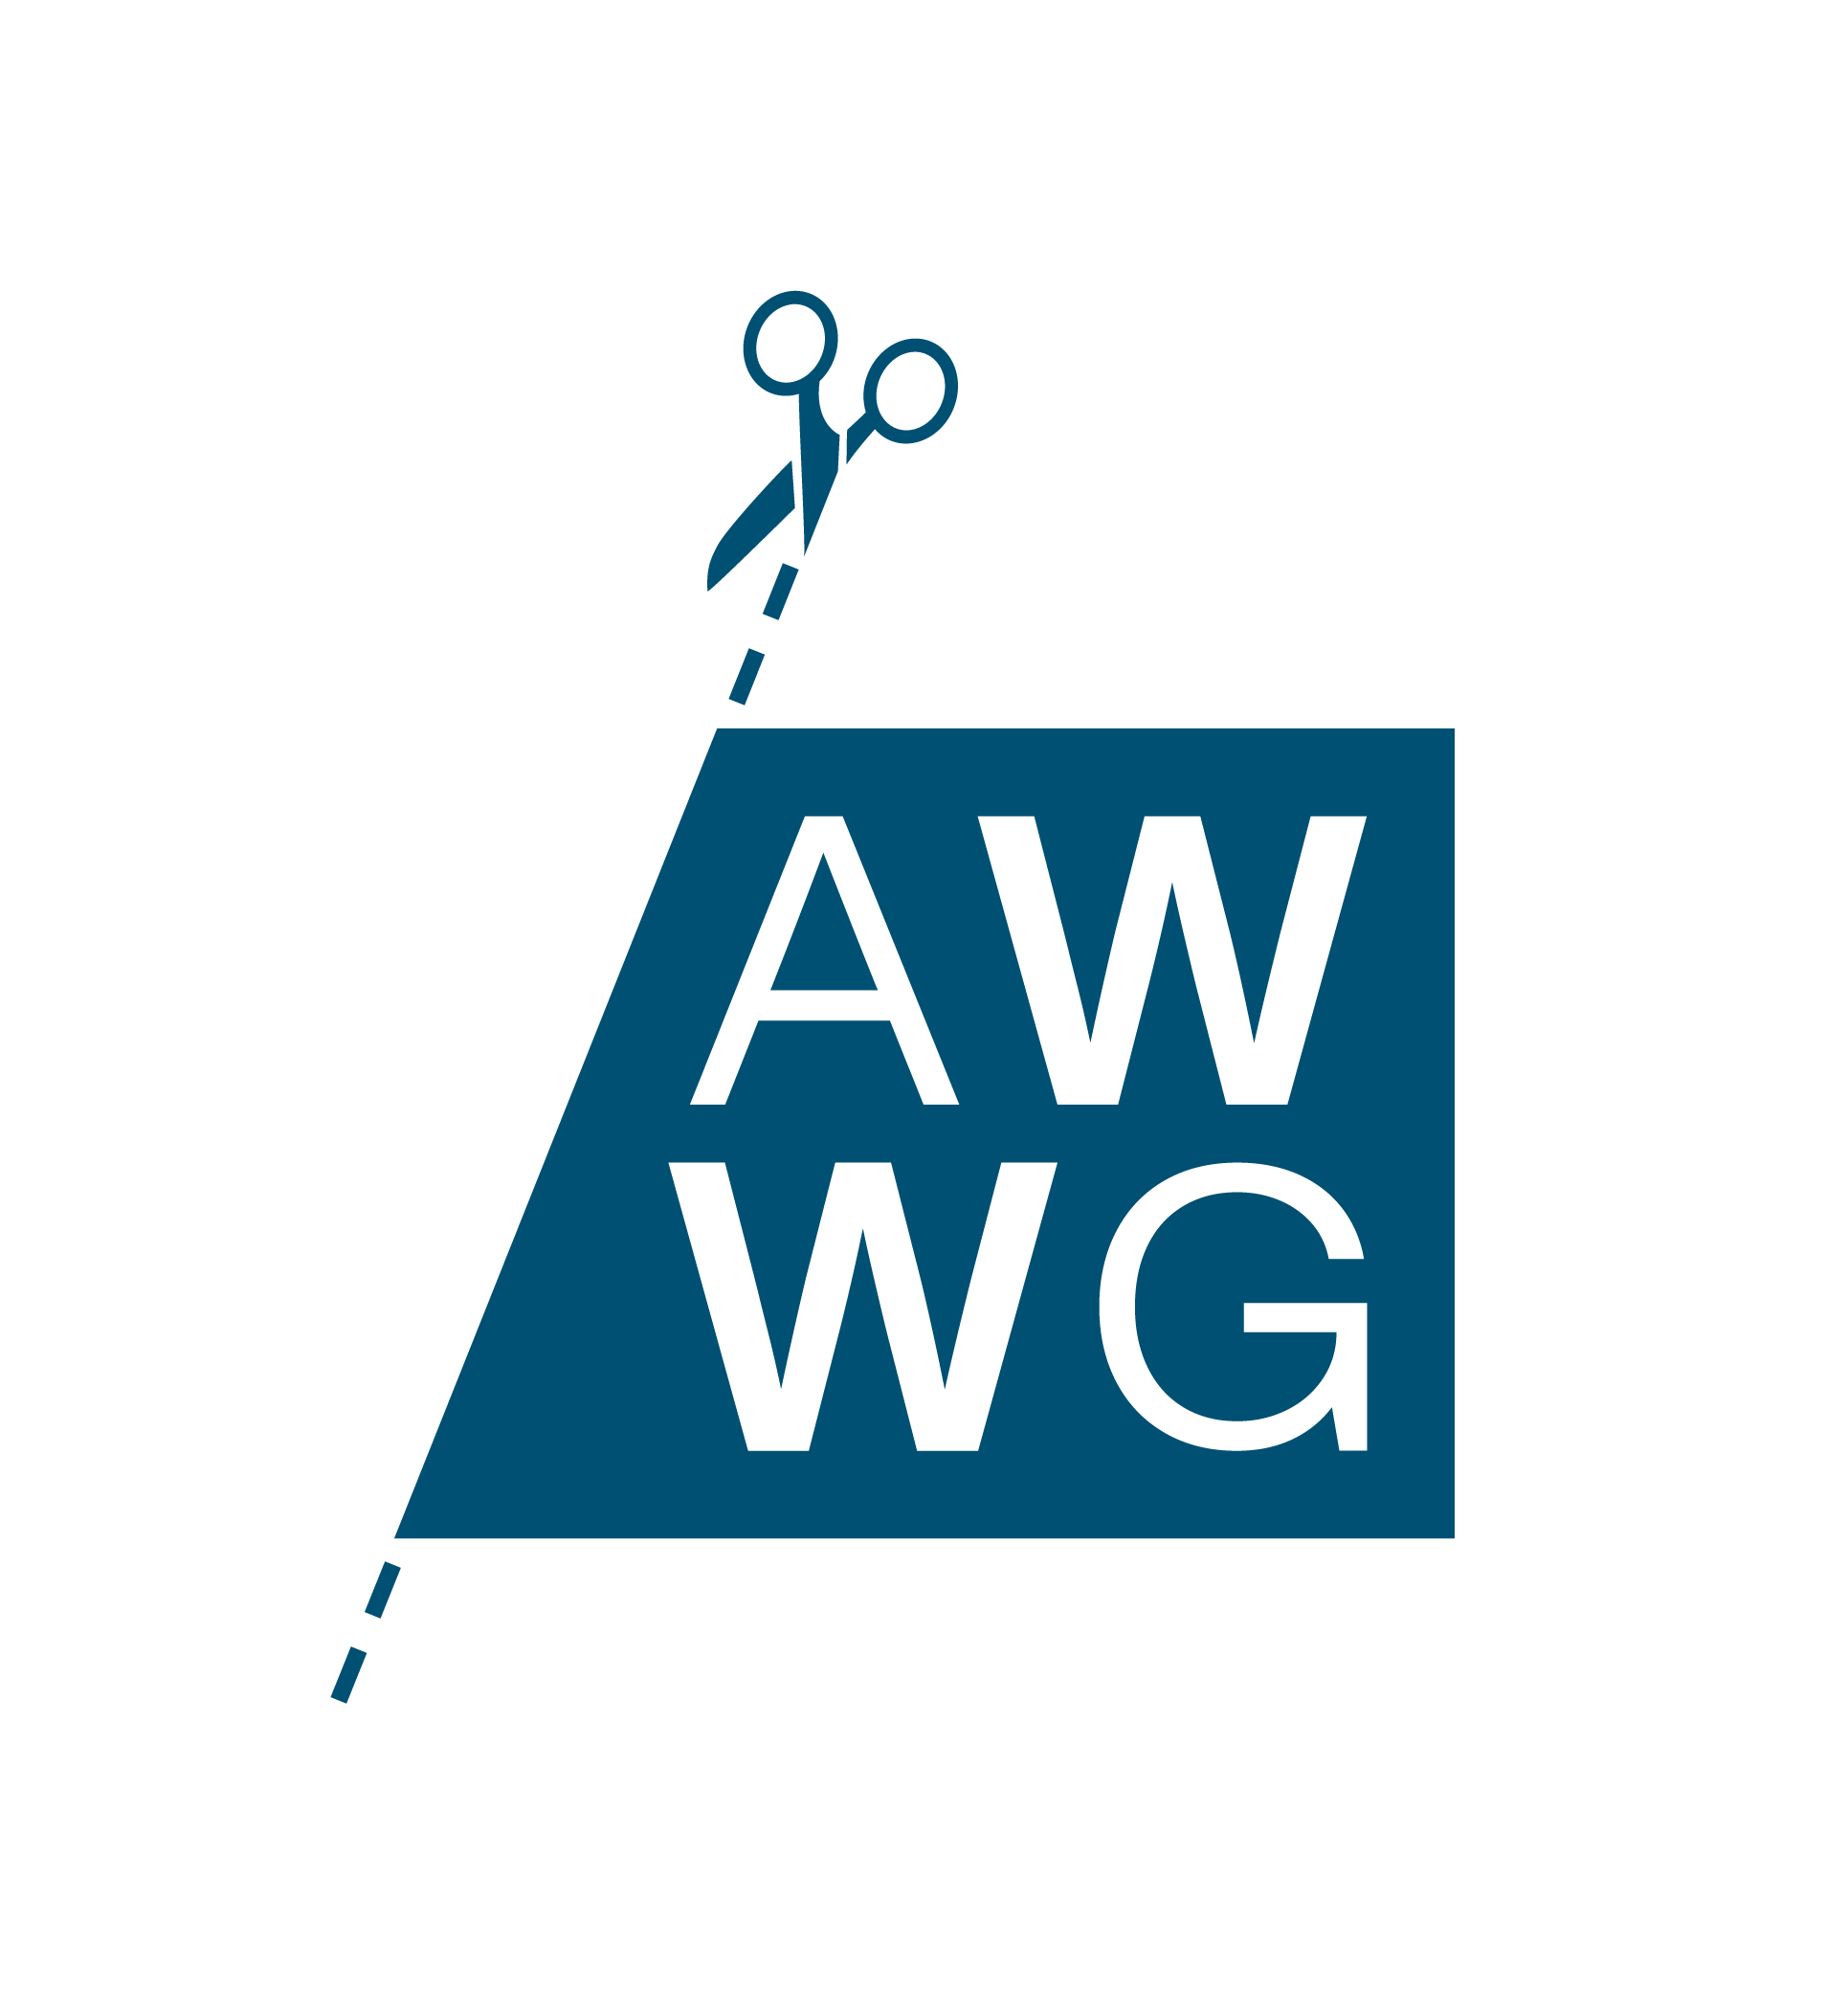 AWWG logo.png